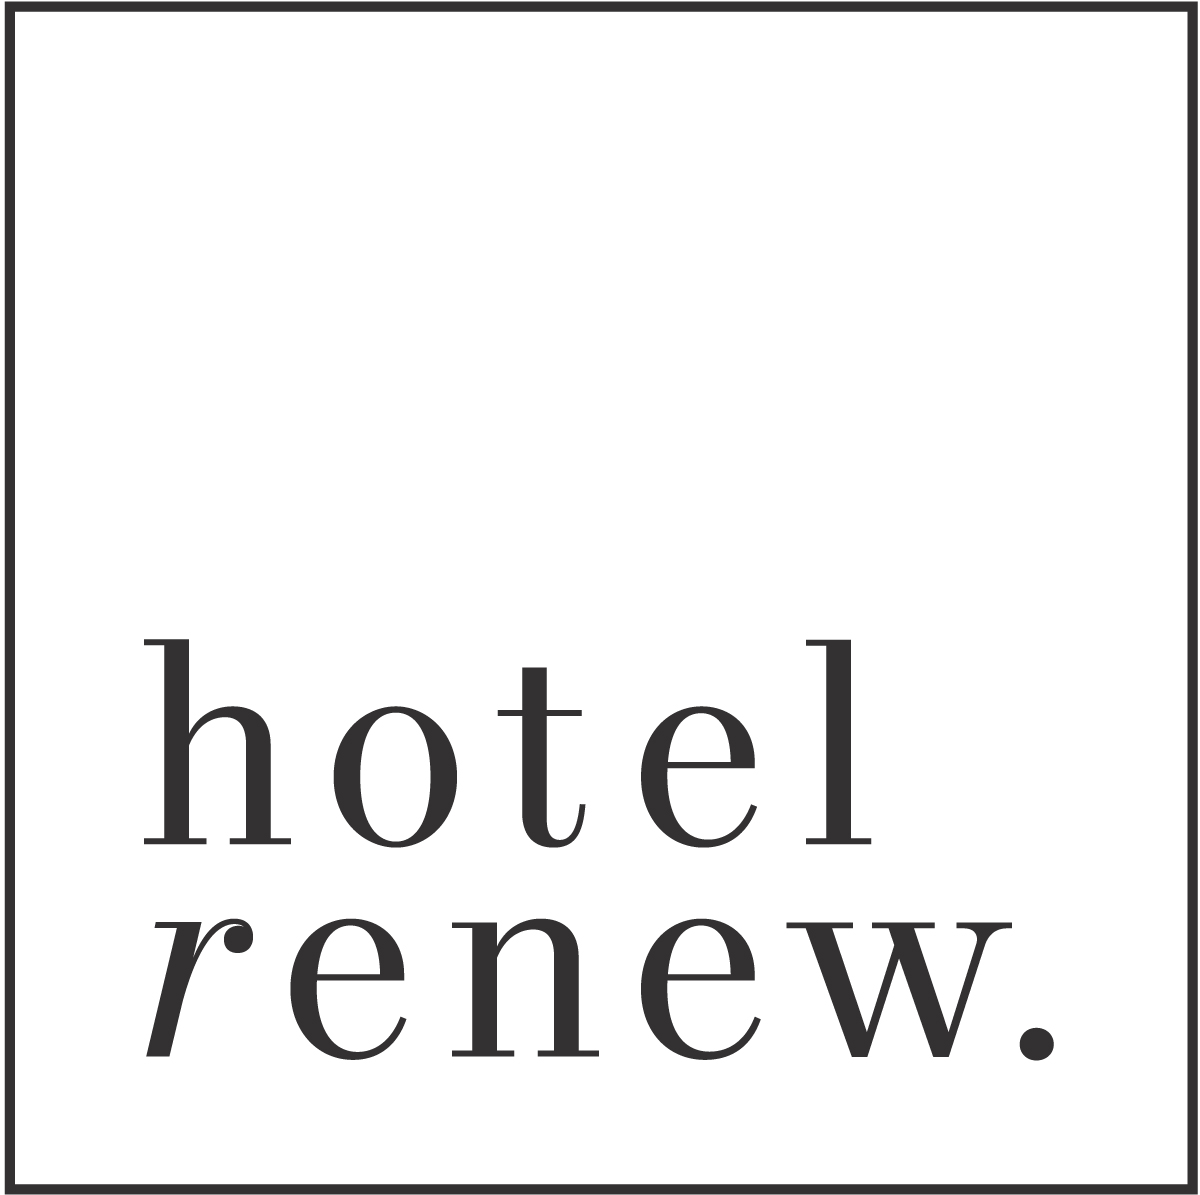 Hotel Renew